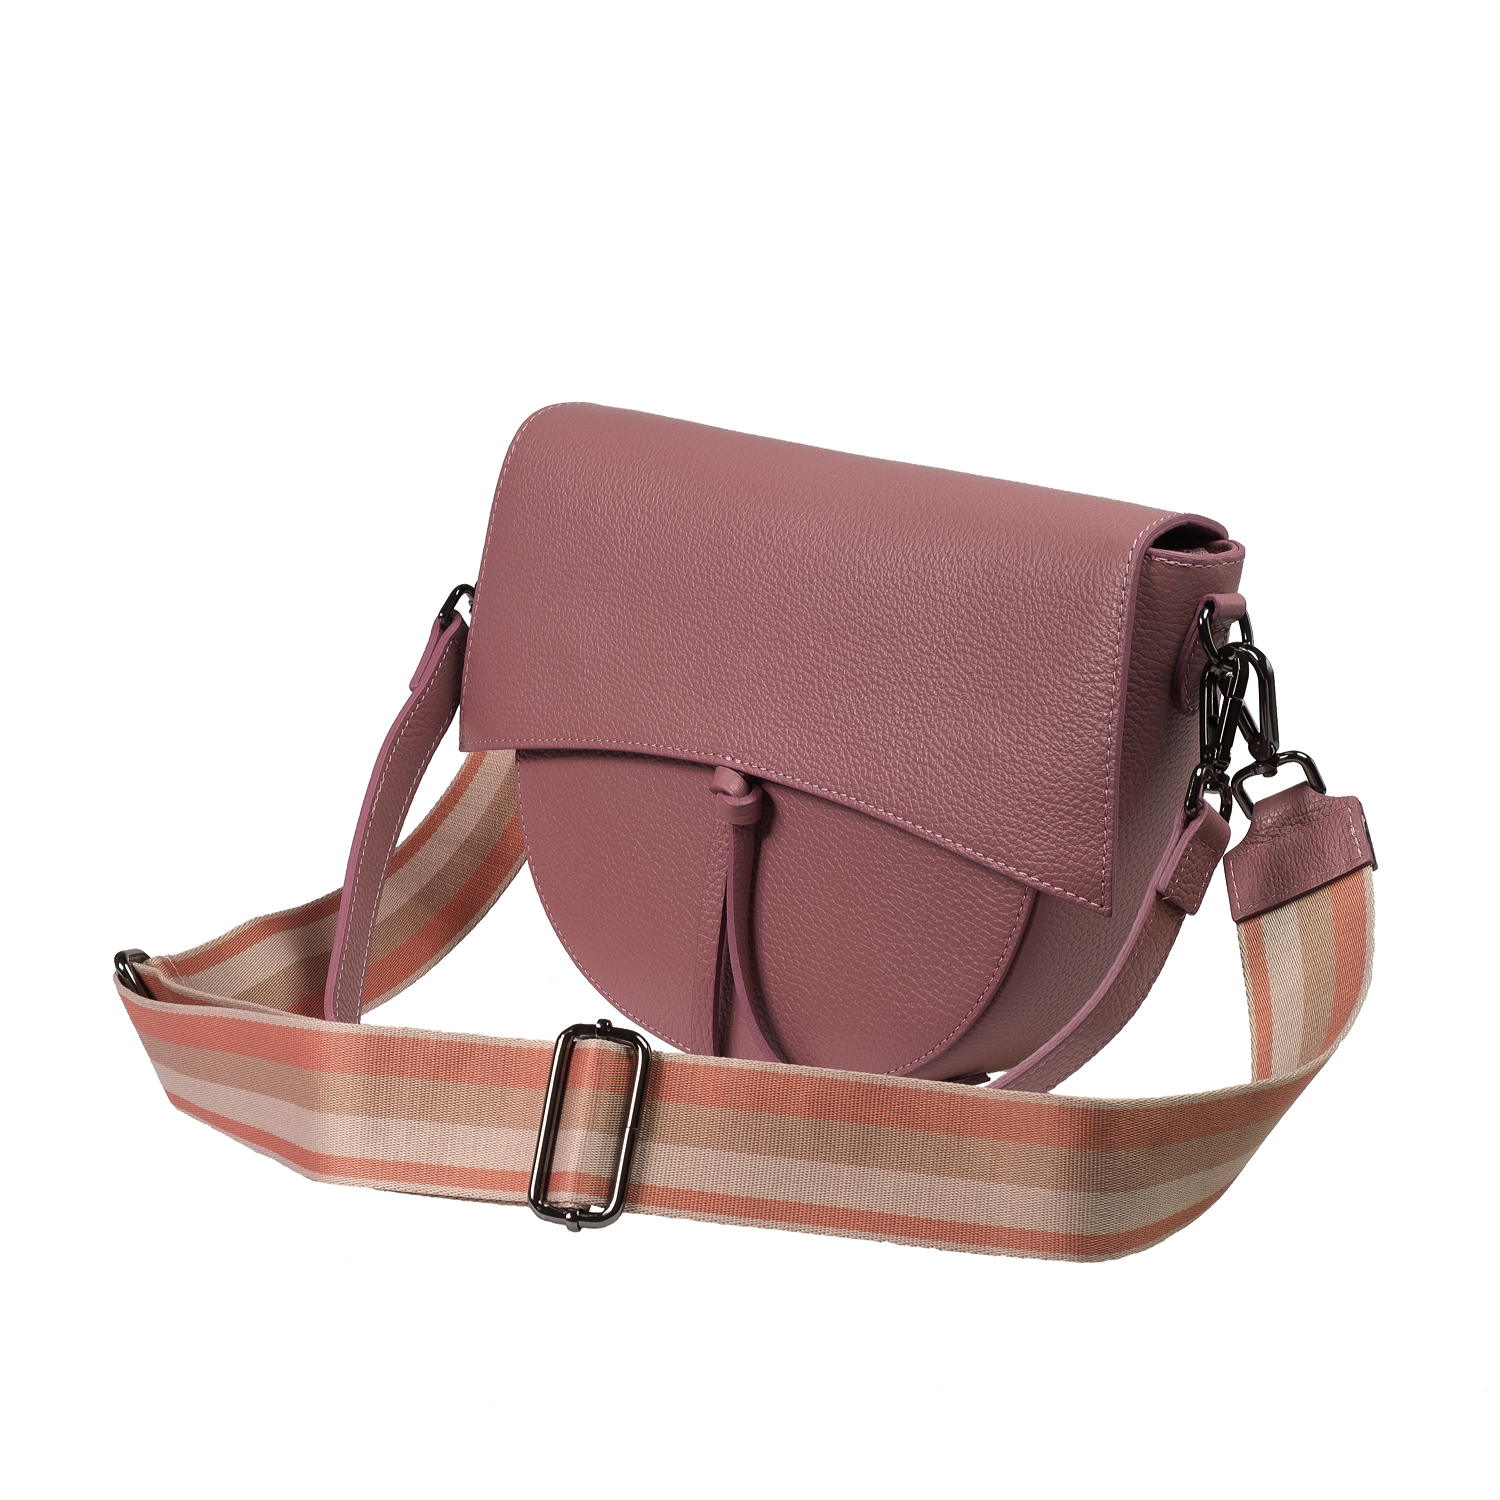 Wholesales Handbags OEM Leather Little Brown Bag Tote Crossbody